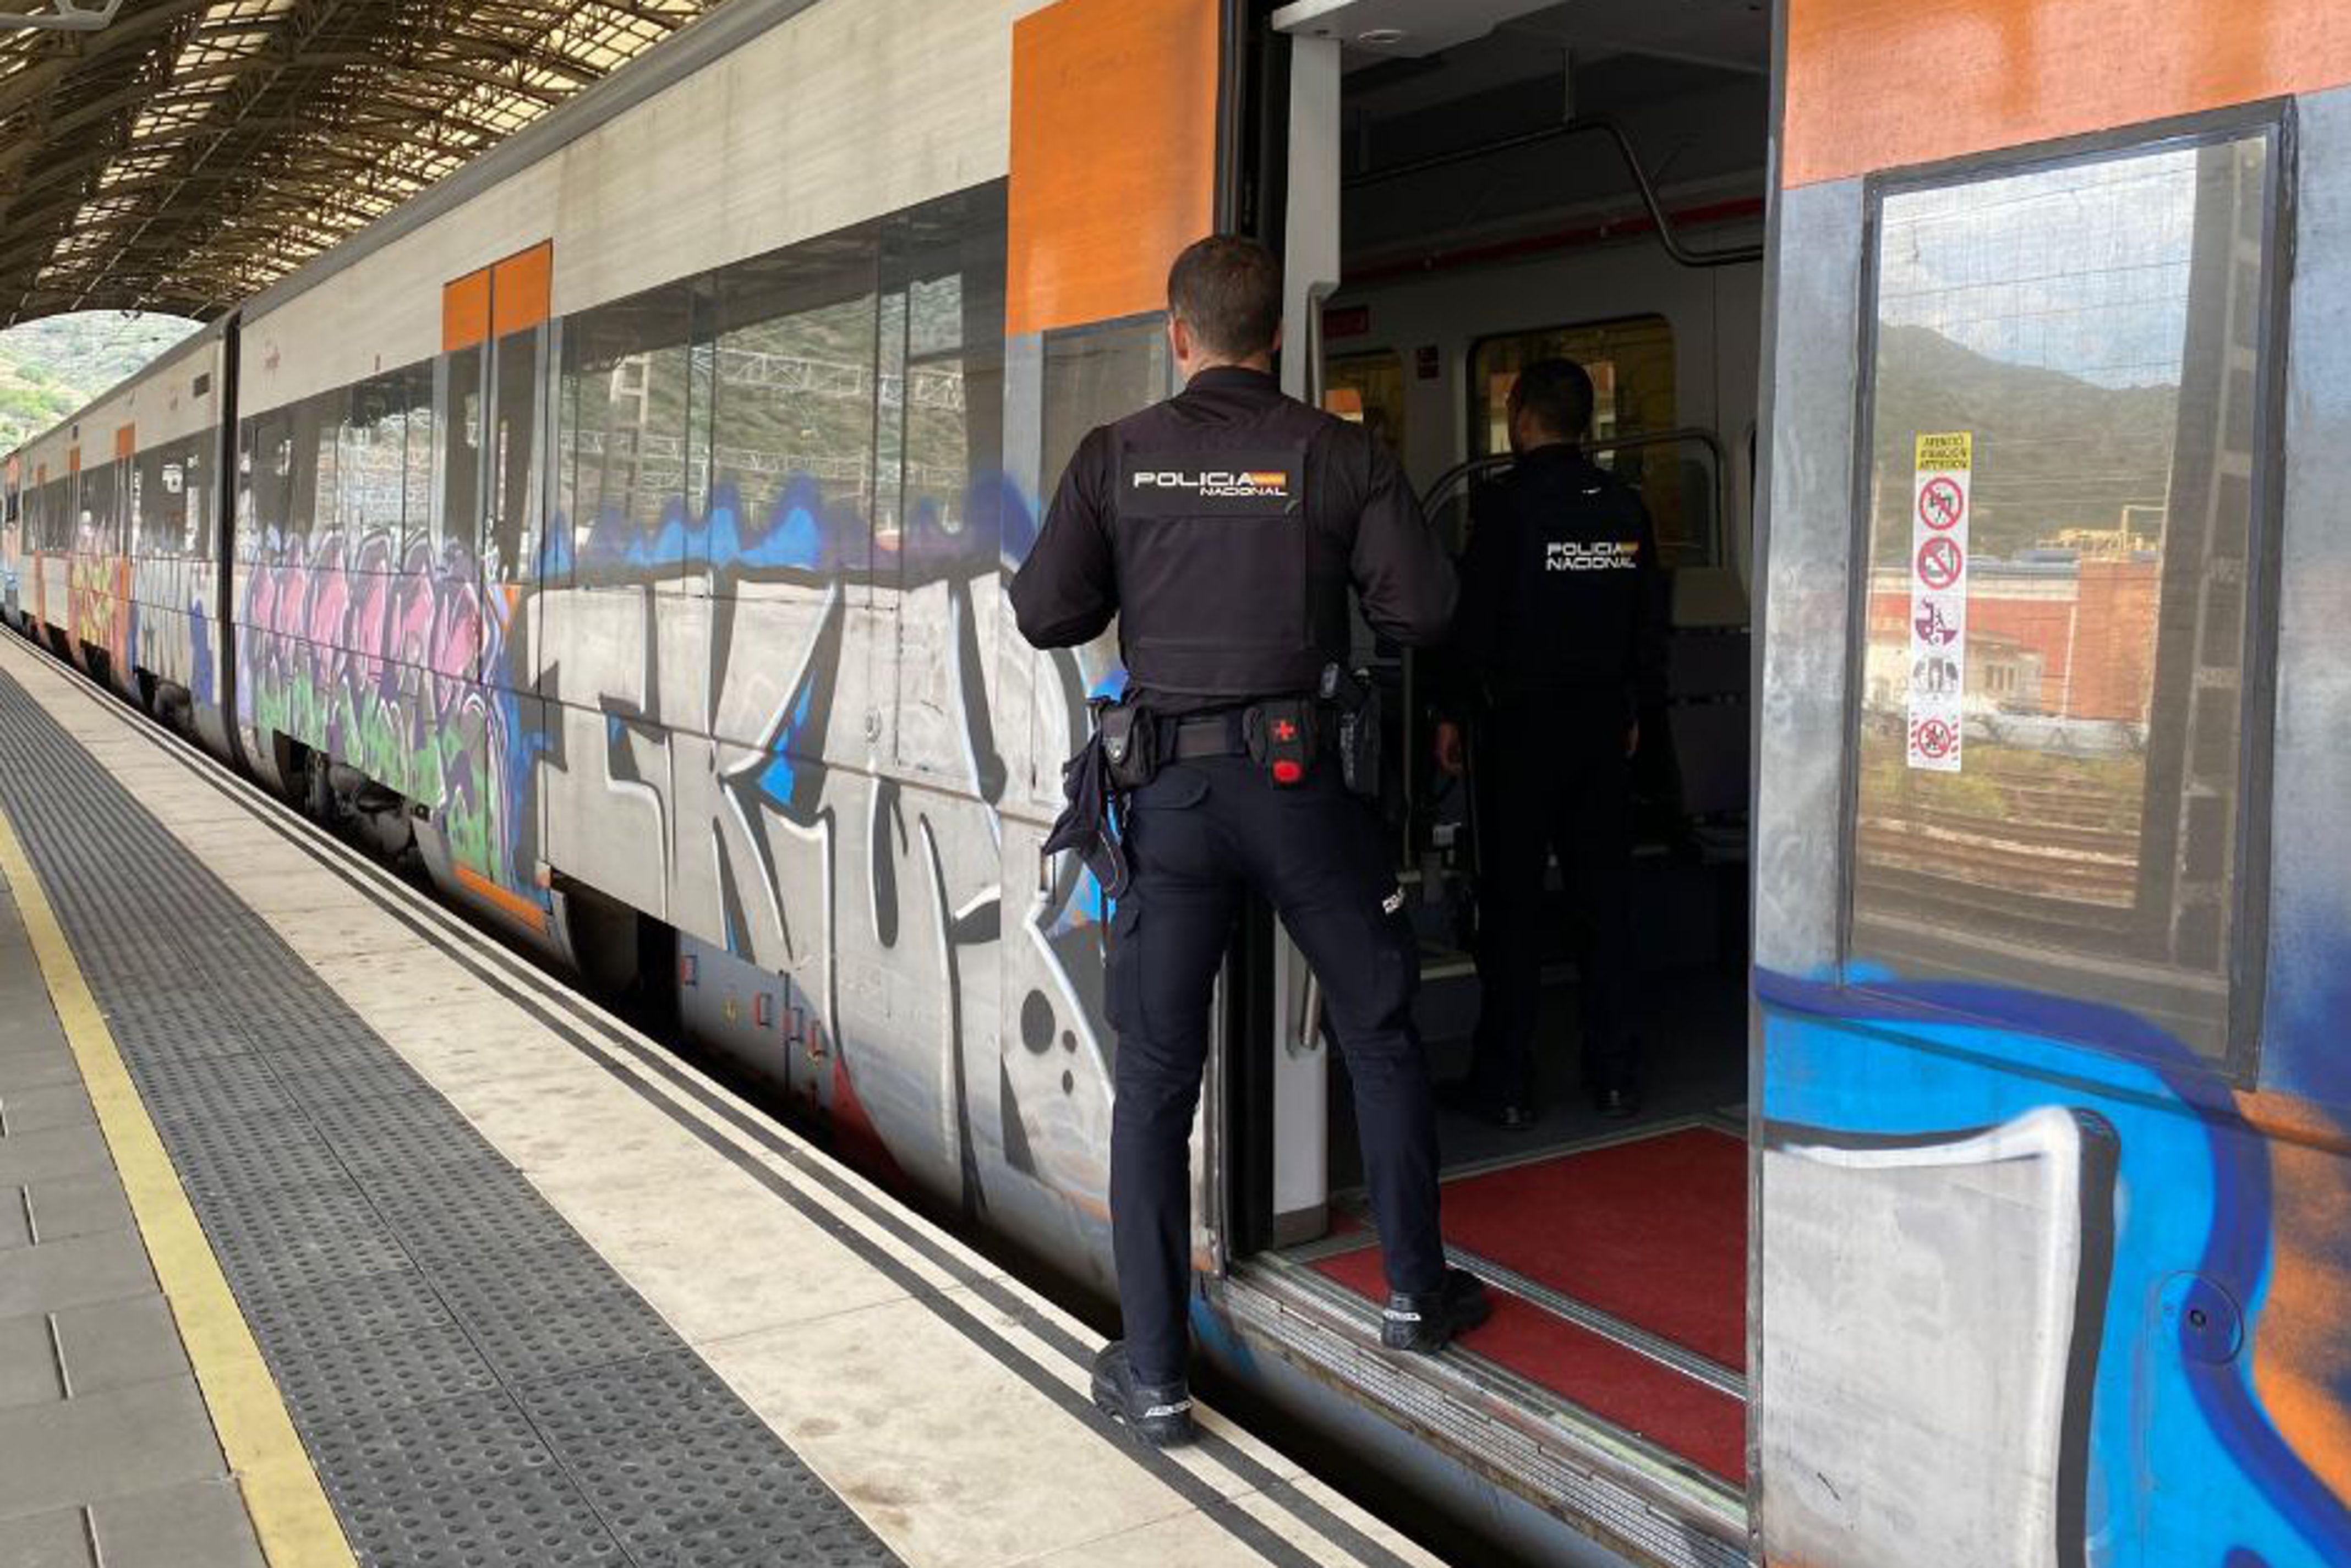 Dos agents de la Policia Nacional pugen en un vagó de tren aturat a l'estació de Portbou per controlar la sortida i entrada de persones a l'Estat